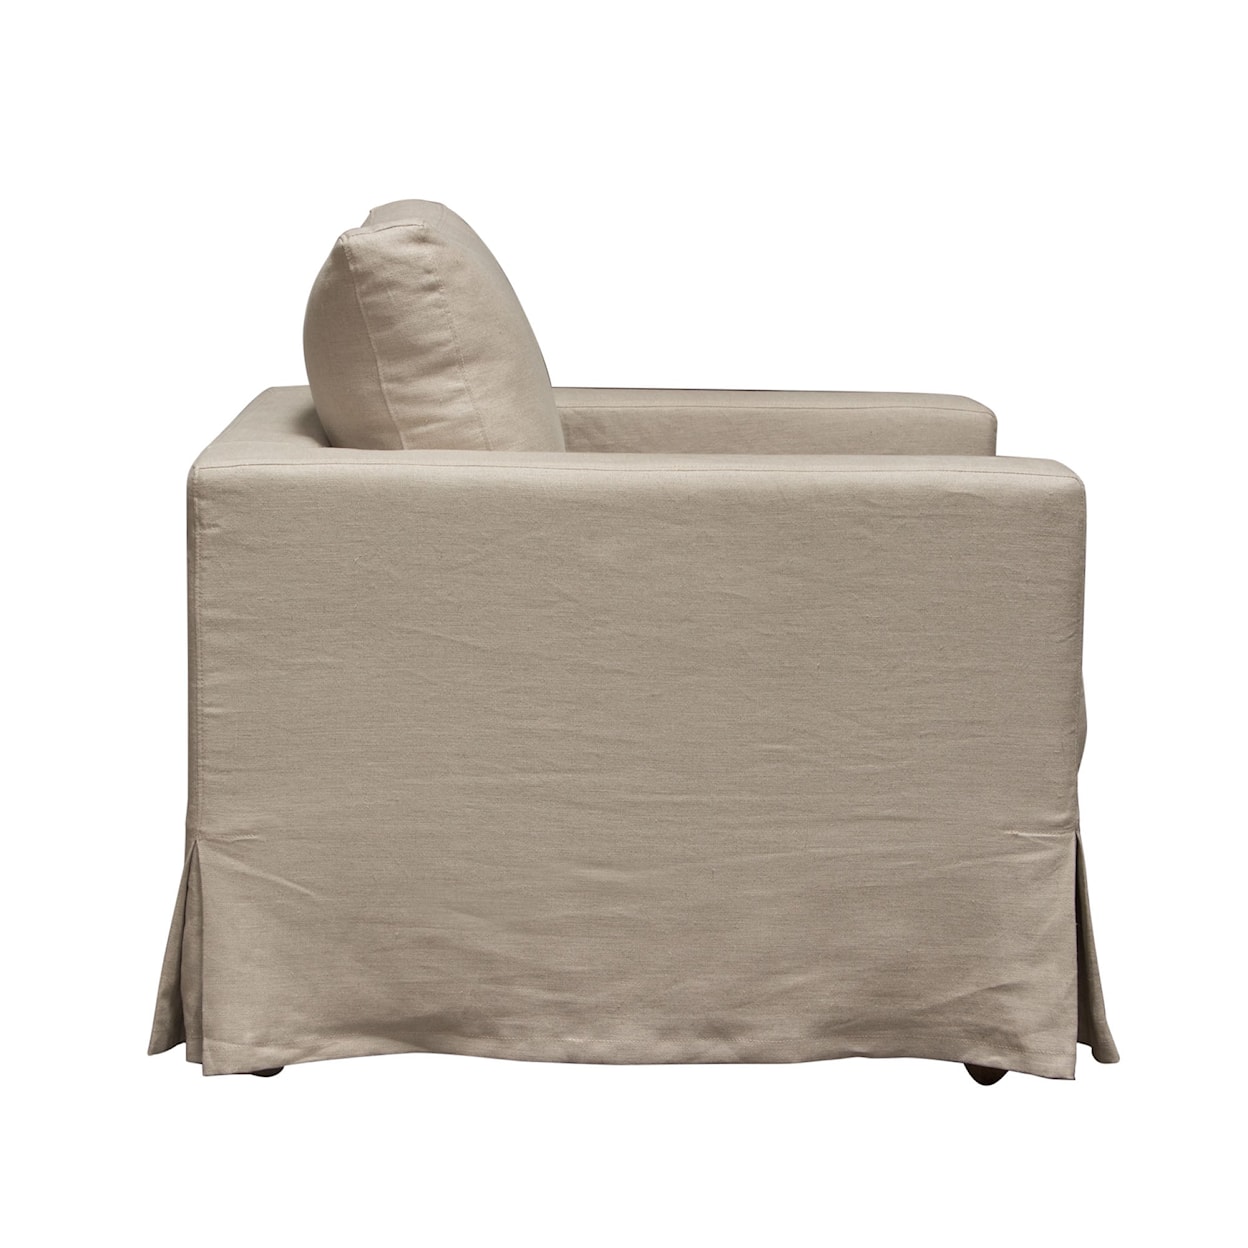 Diamond Sofa Furniture Savannah Slip-Cover Chair In Sand Natural Linen